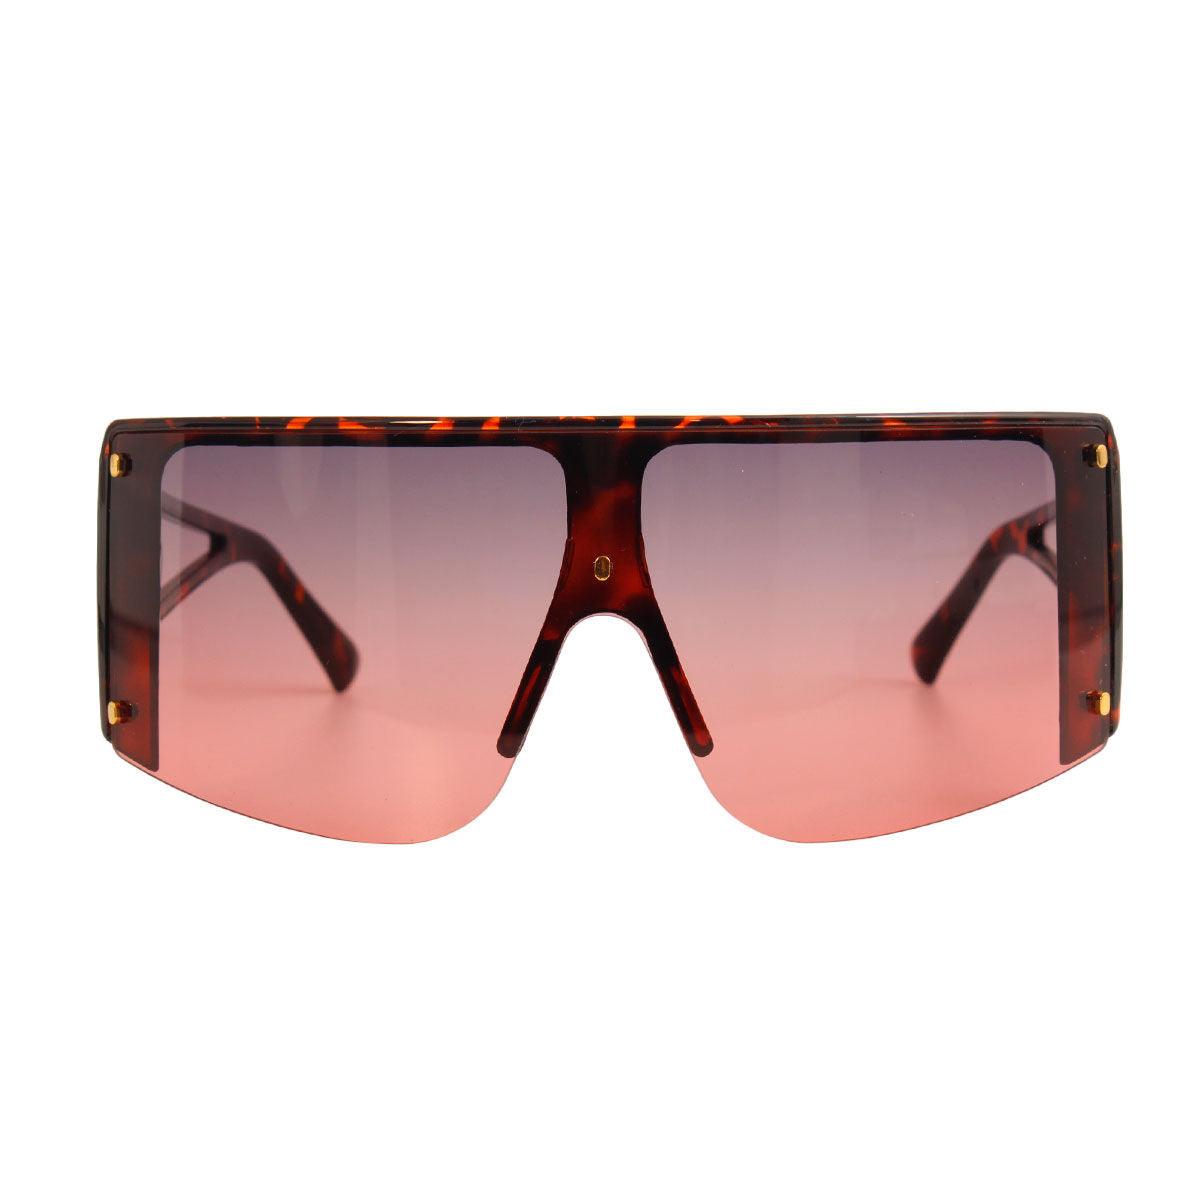 Faux Tortoiseshell Frame Visor Elevate Stylish Sunglasses for Women